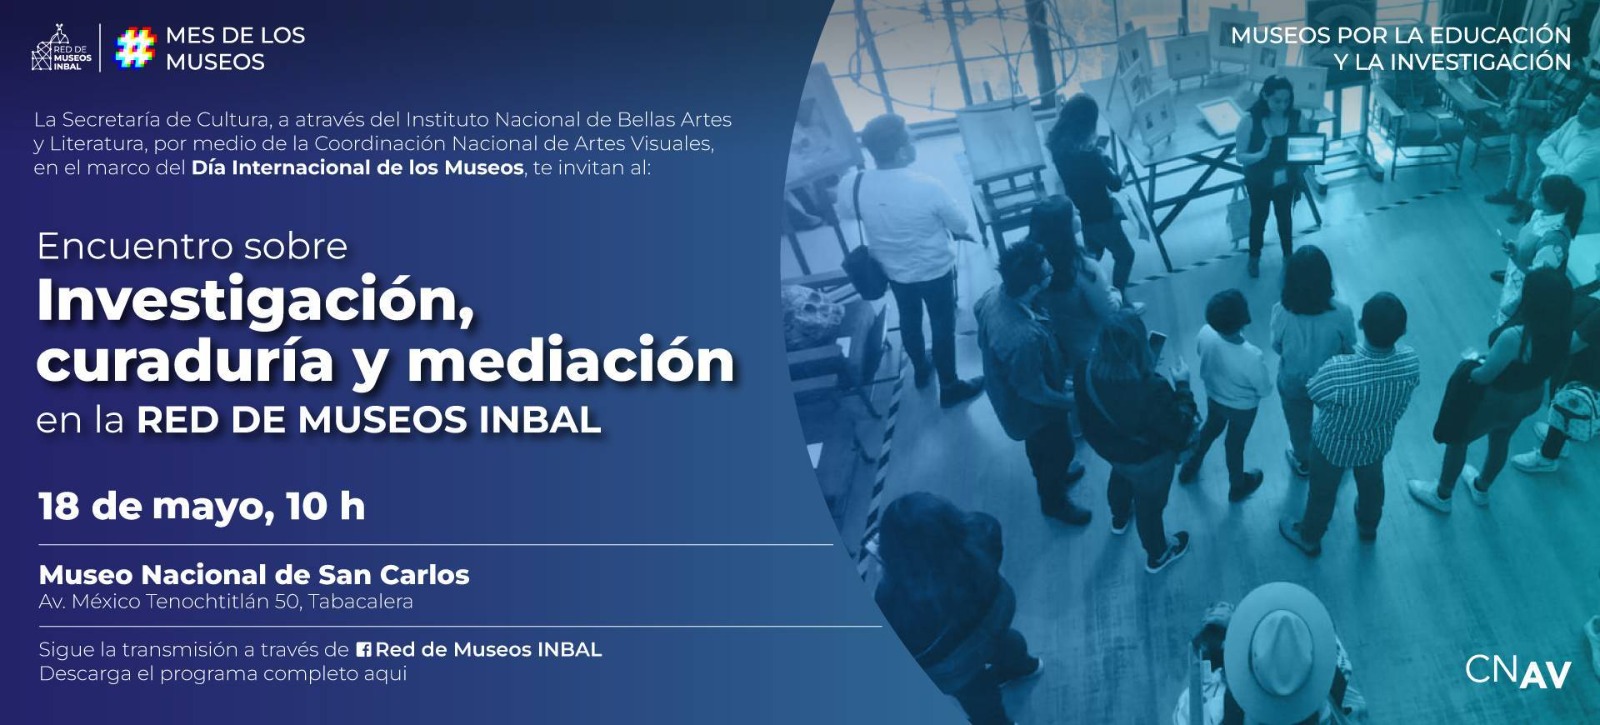 Encuentro sobre Investigación, curaduría y mediación en la RED DE MUSEOS INBAL